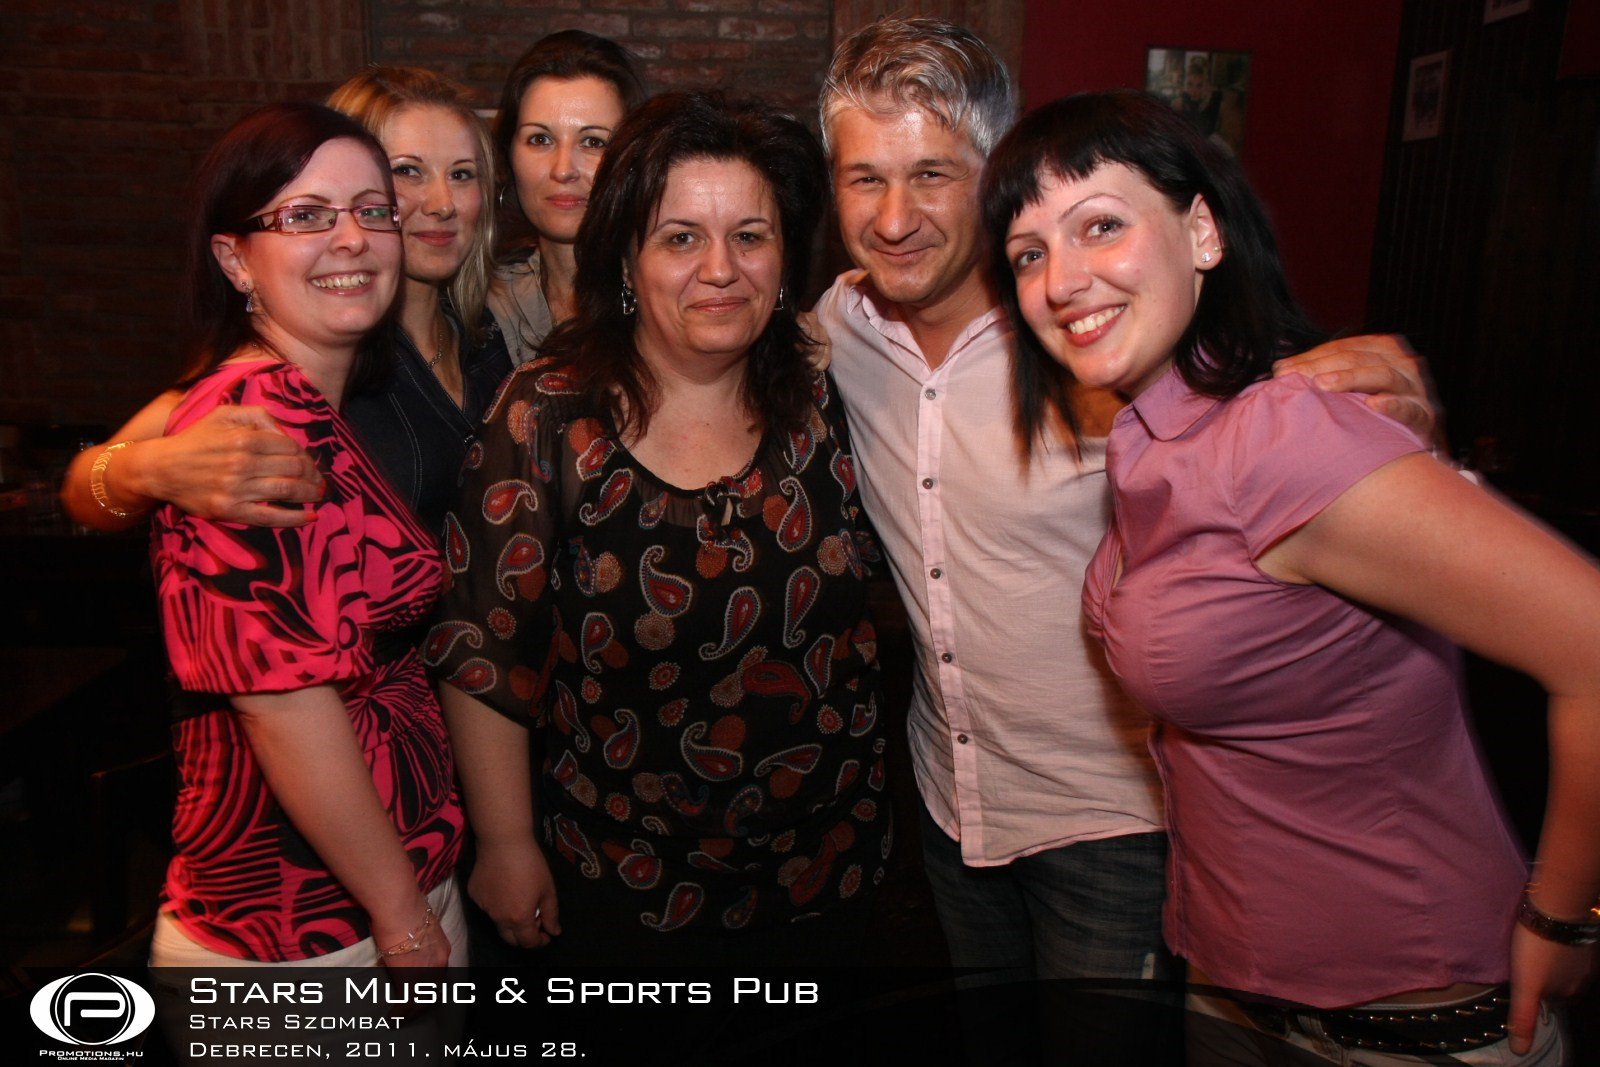 Debrecen, Stars Music & Sports Pub - 2011. május 28. Szombat